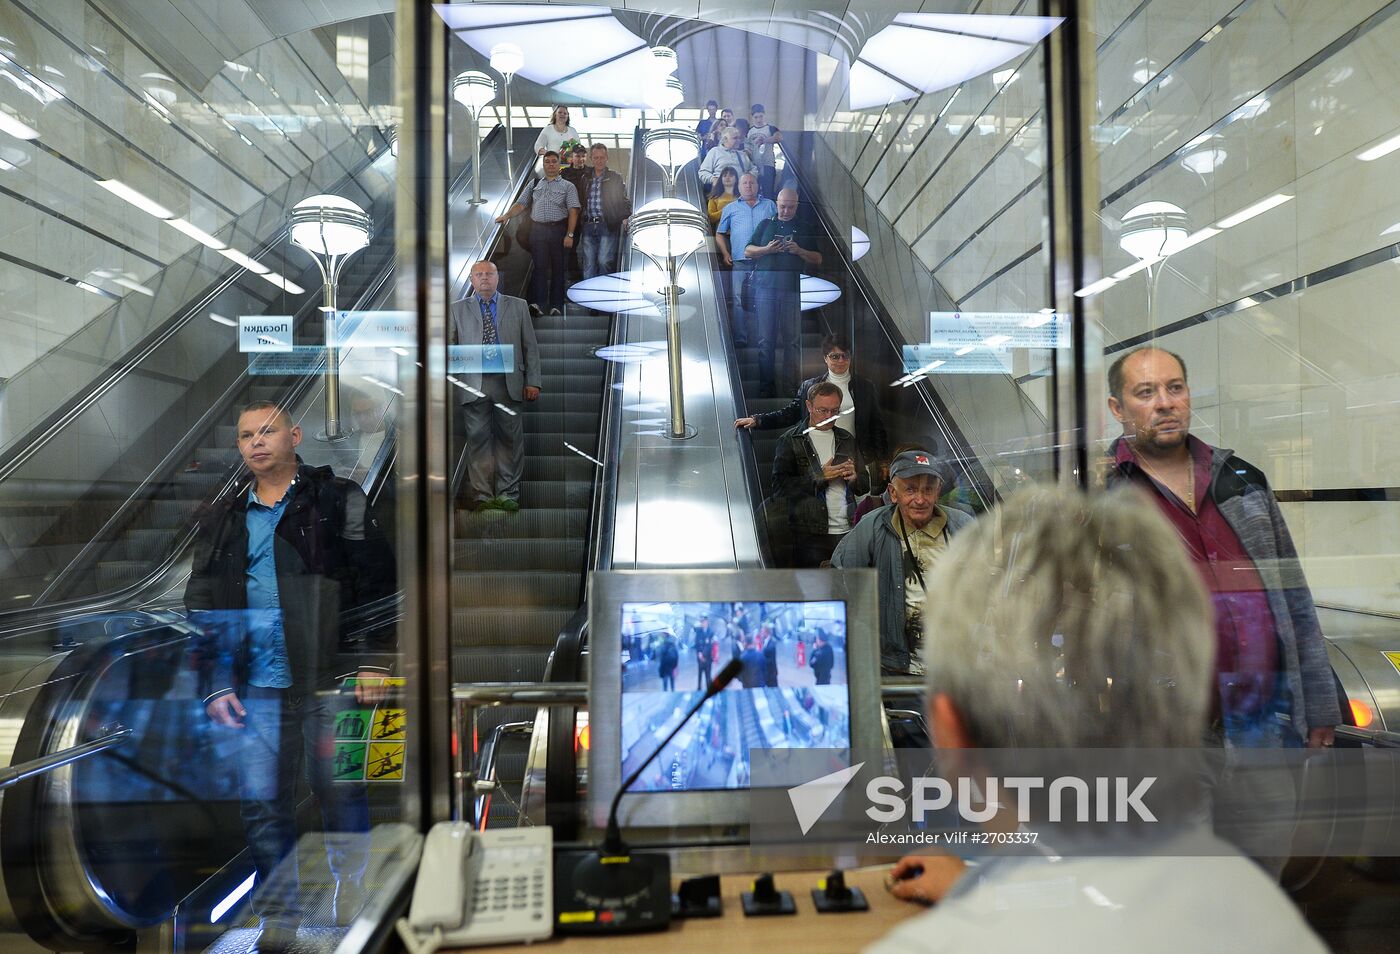 Kotelniki metro station opens in Moscow